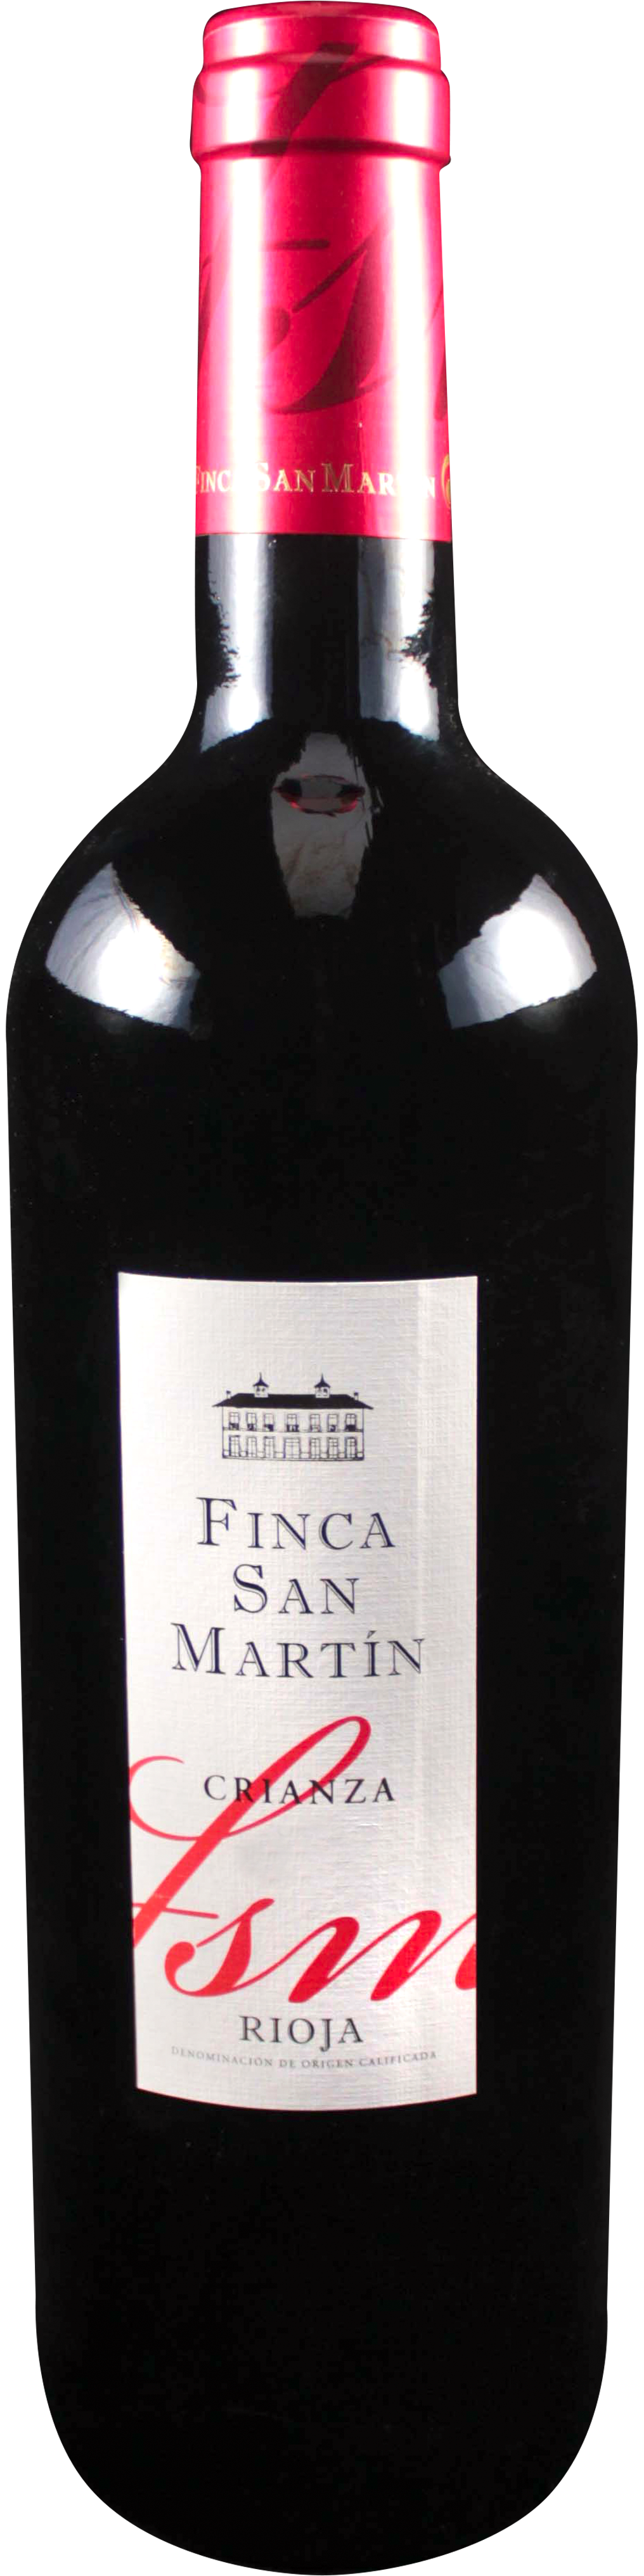 Bottle shot of 2010 Finca San Martin Crianza